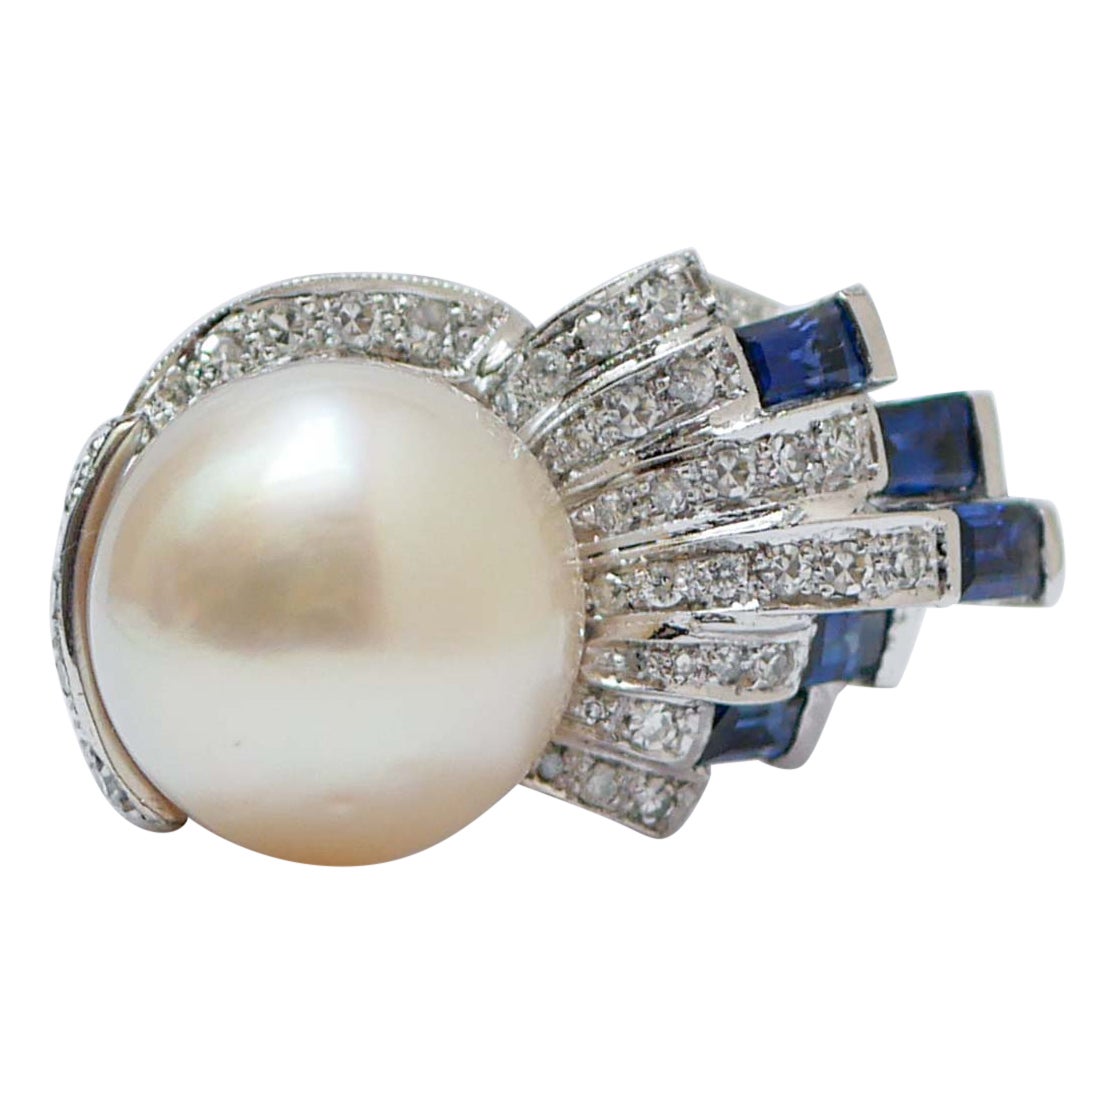 Platinring mit weißer Perle, Saphiren, Diamanten und Platin.